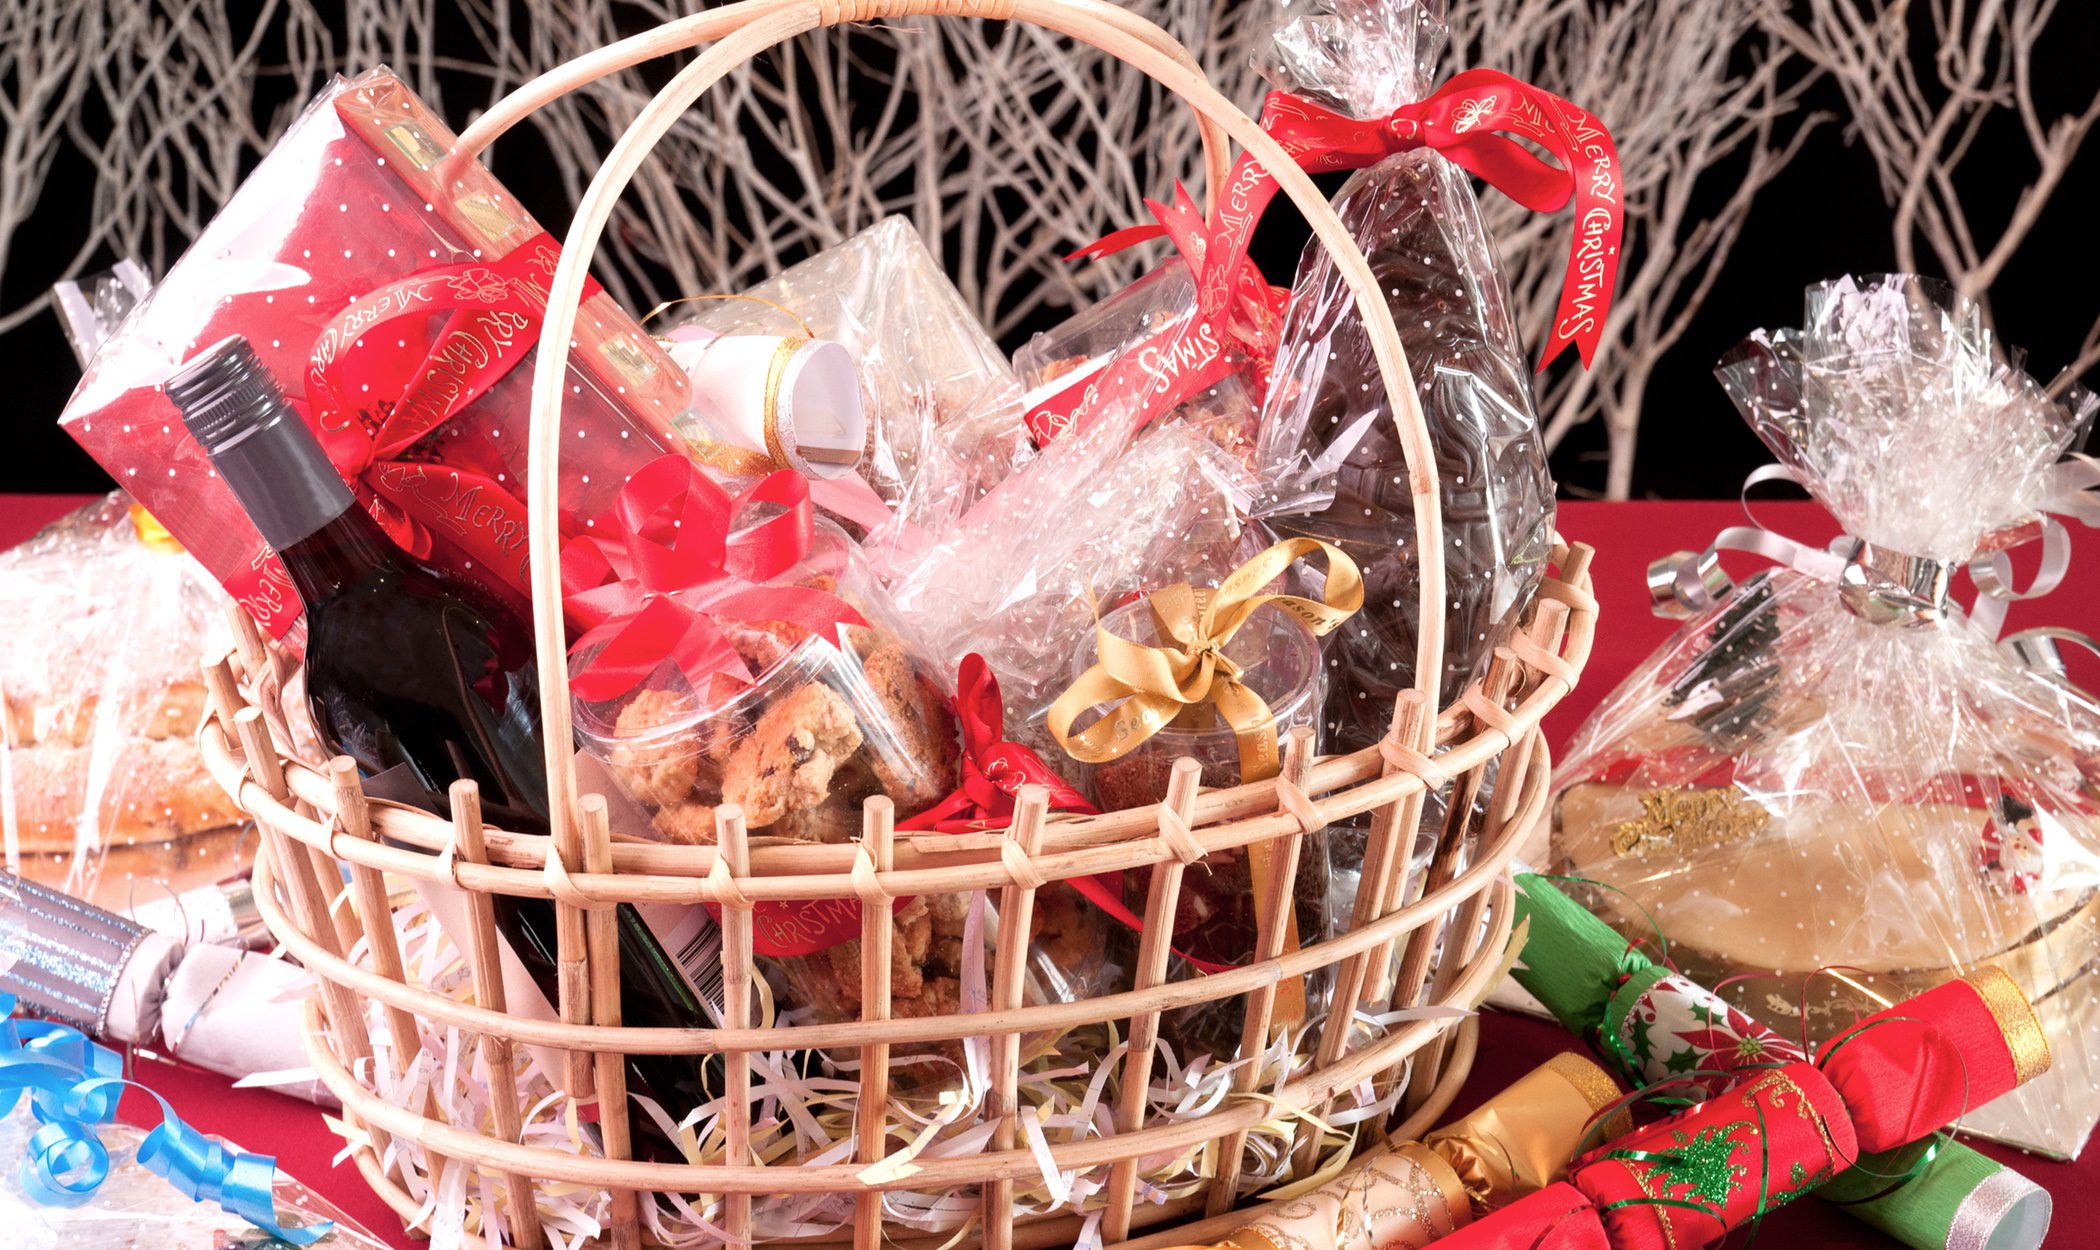 Productos que no pueden faltar en una cesta de Navidad